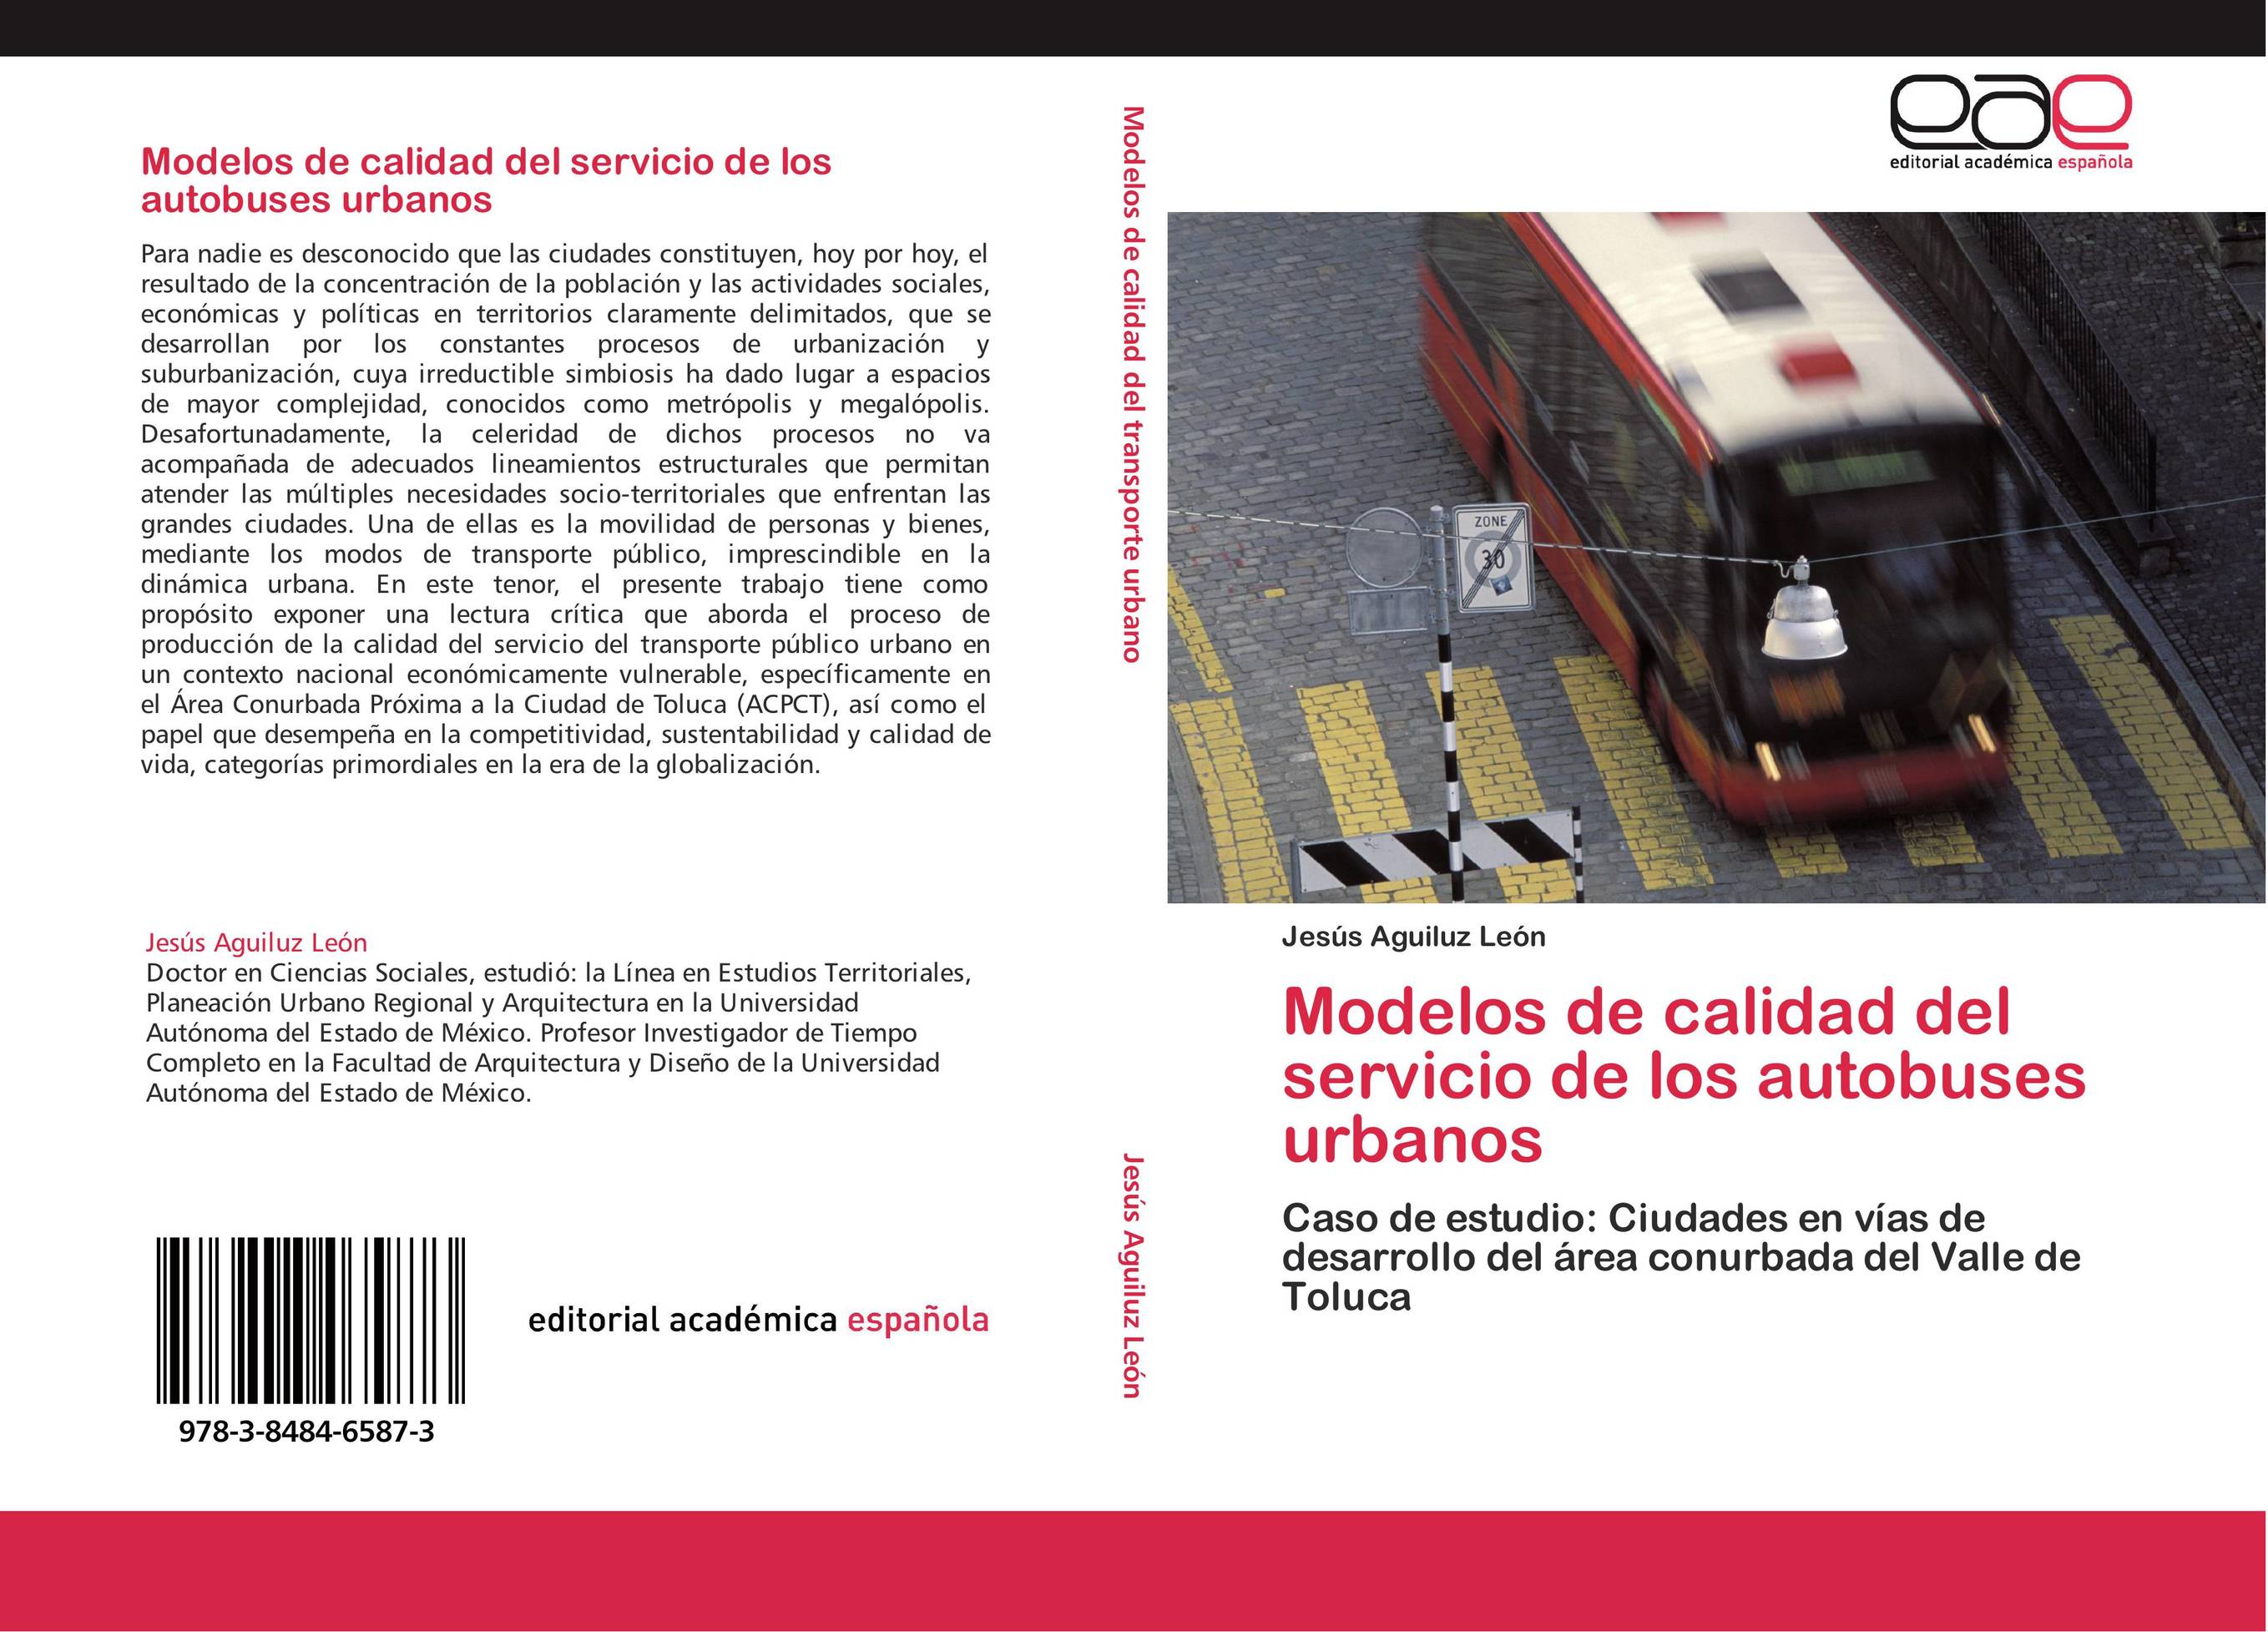 Modelos de calidad del servicio de los autobuses urbanos